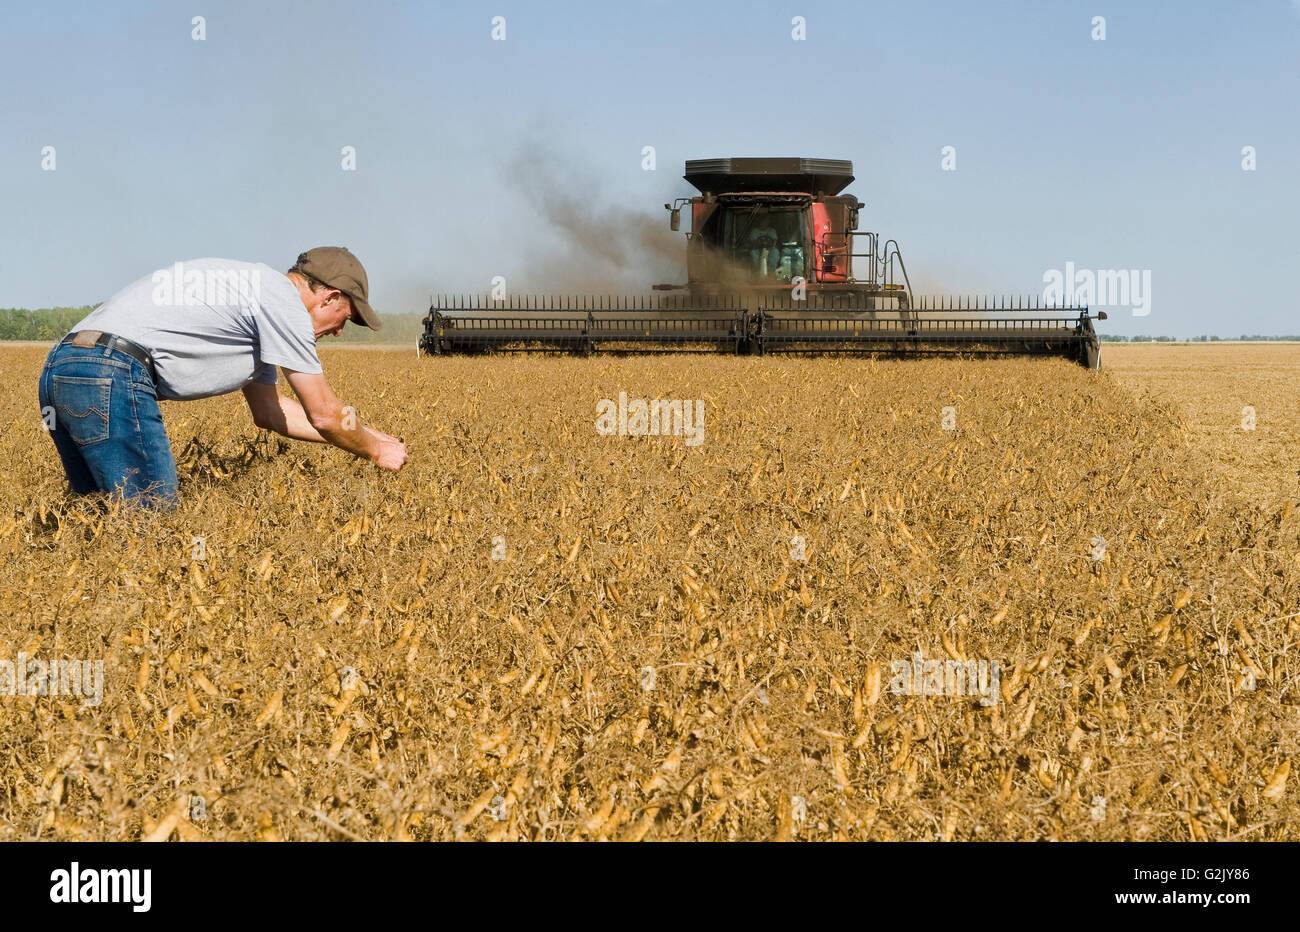 Un uomo esamina campo giallo piselli mentre una mietitrebbia raccolti il raccolto, vicino a Winnipeg, Manitoba, Canada Foto Stock